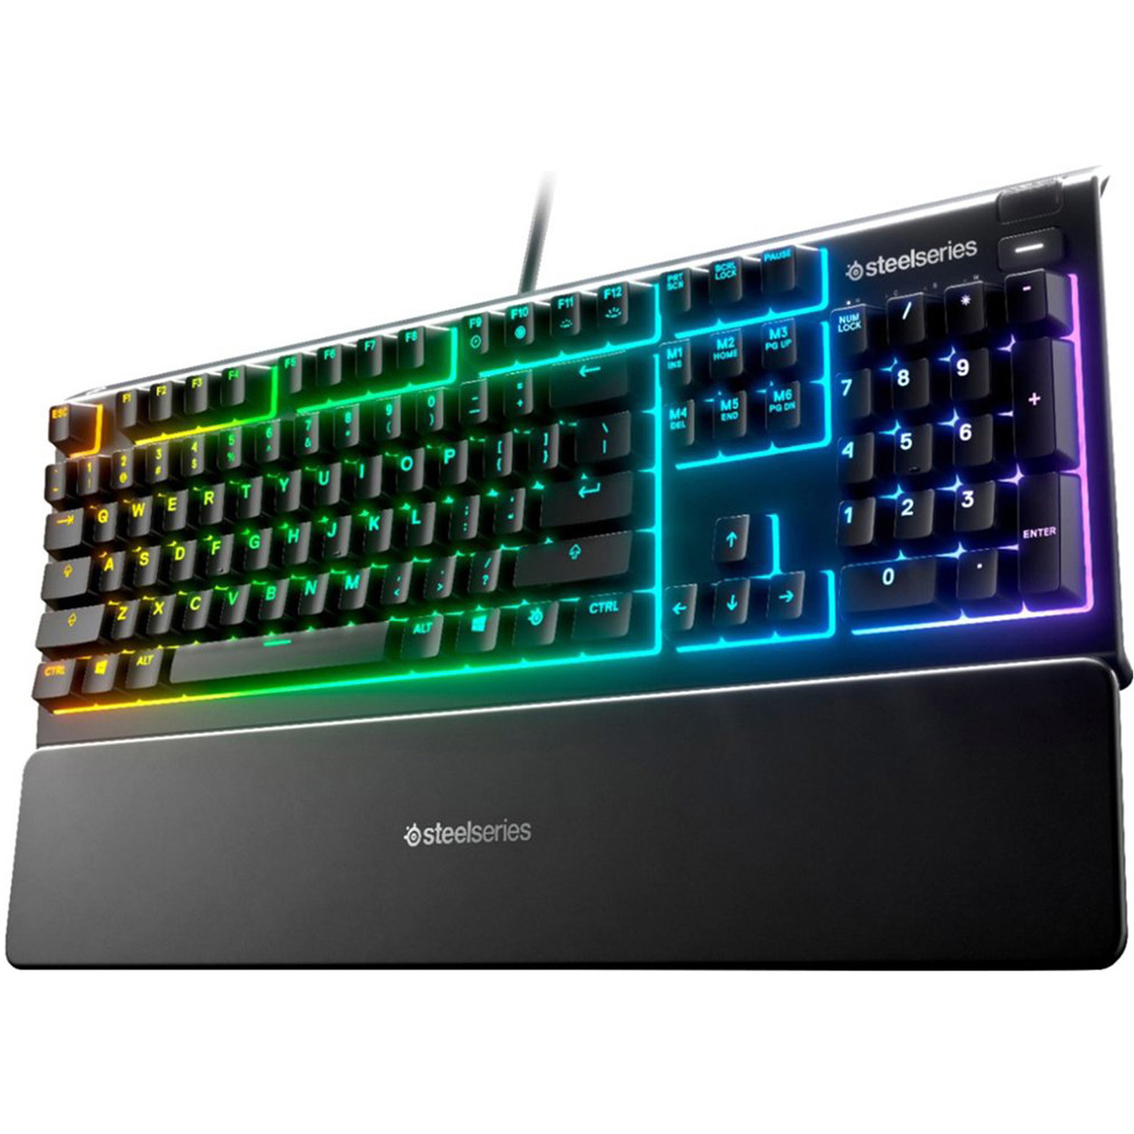 SteelSeries Apex 3 RGB Gaming Keyboard - Image 1 of 3